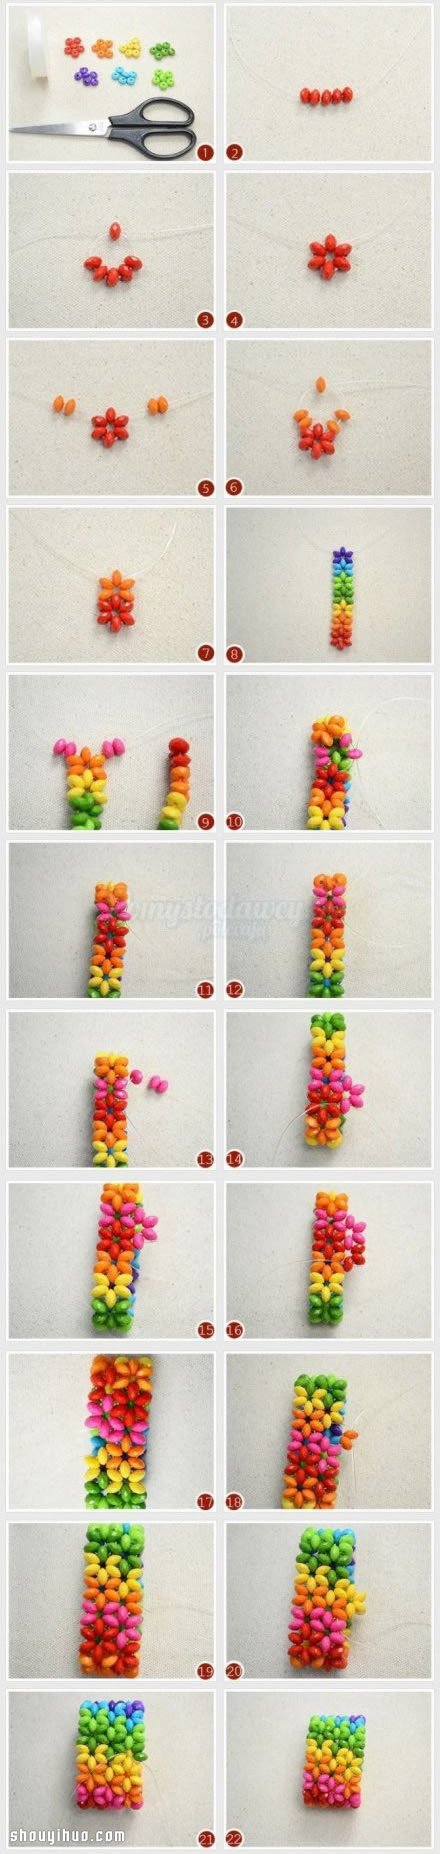 彩虹般美丽的宽版串珠手镯编织DIY图解教程